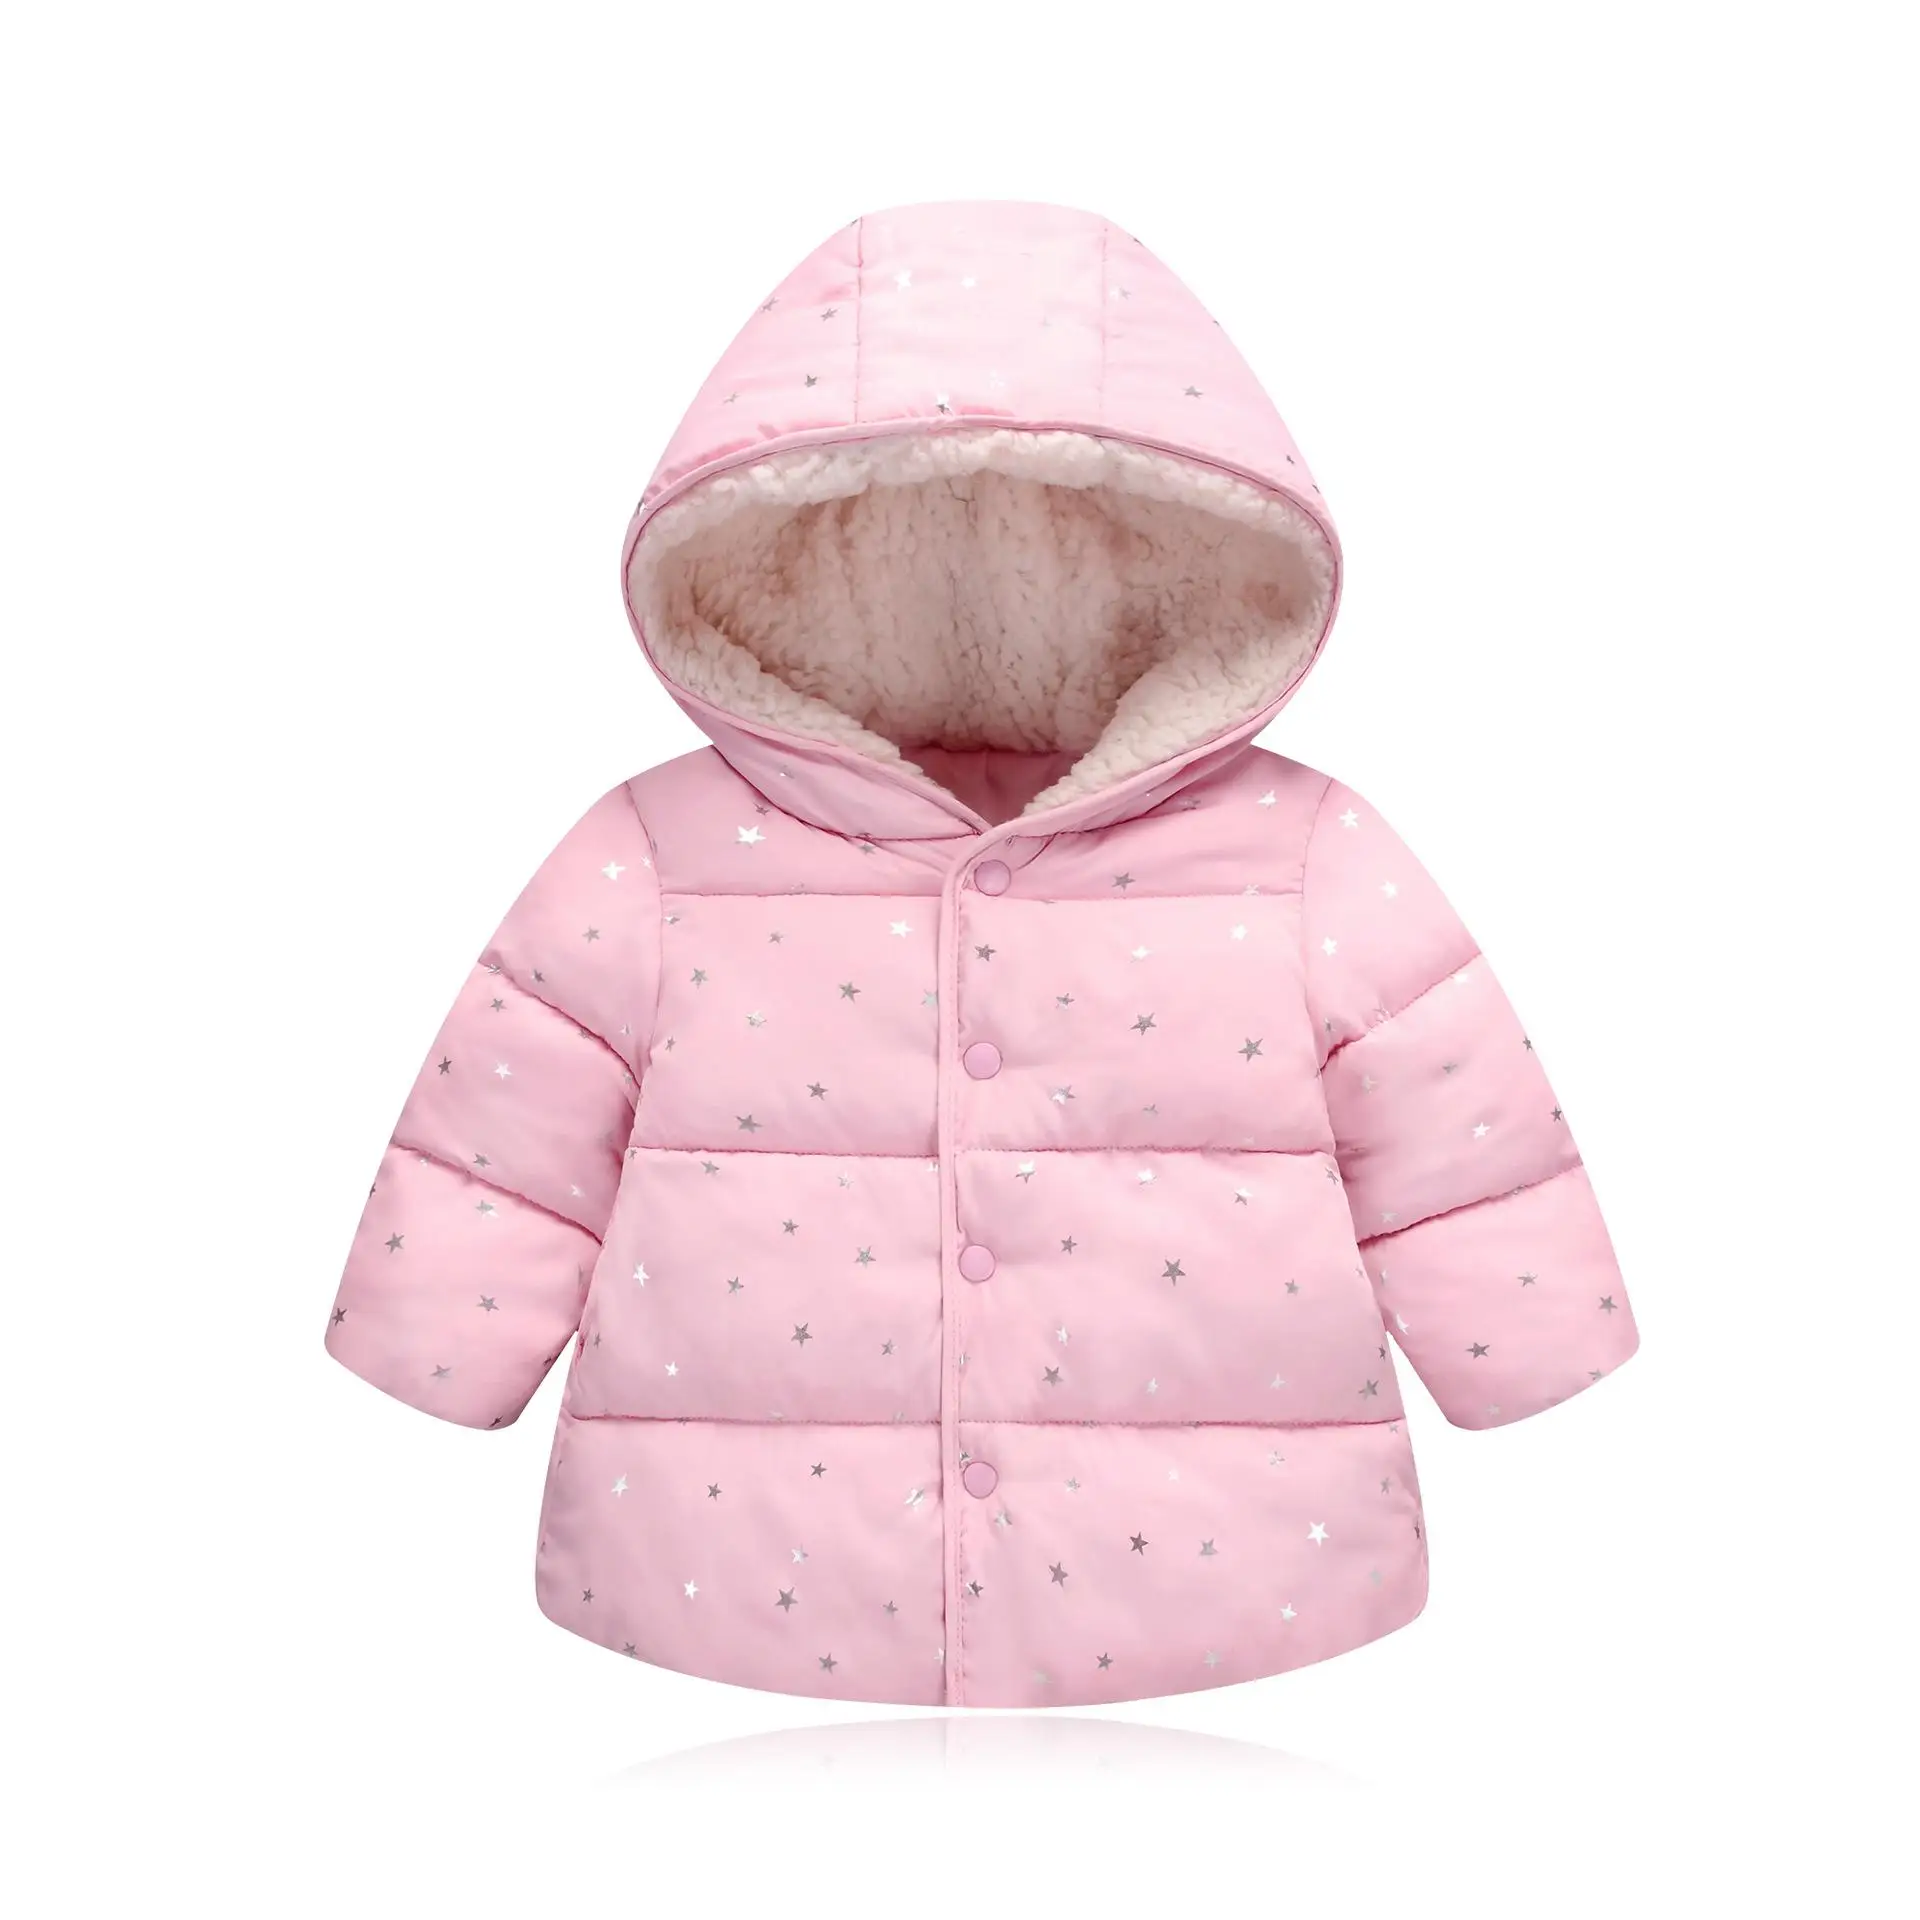 Пальто с мехом для девочек куртка для мальчиков, пальто для девочек, зимние детские куртки для мальчиков детская одежда для девочек зимняя парка для мальчиков от 6 до 12 лет - Цвет: Pink